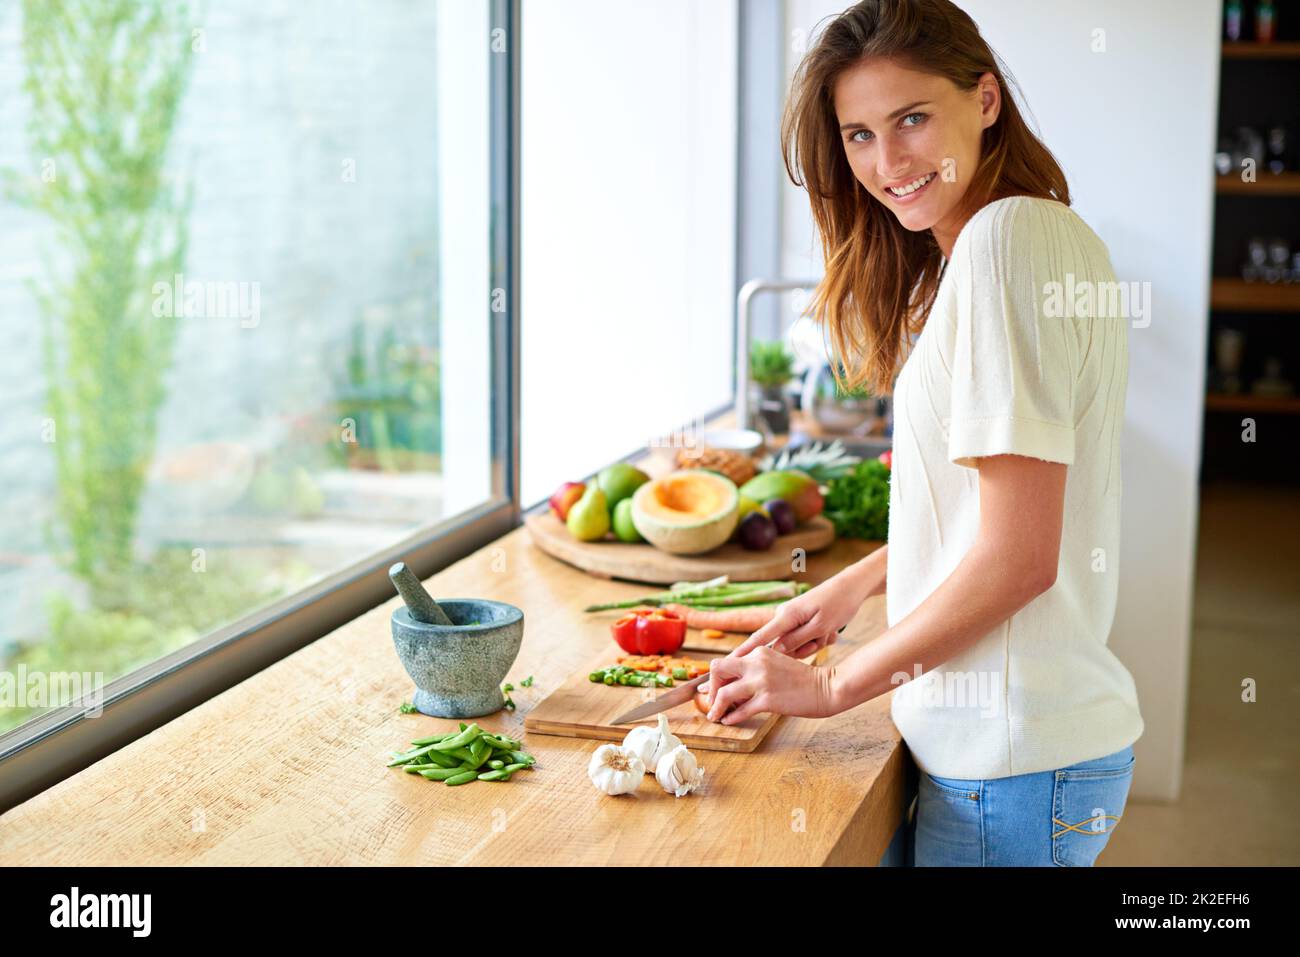 Cocinar es mi felicidad. Tiro de una joven atractiva que pica verduras en una cocina. Foto de stock